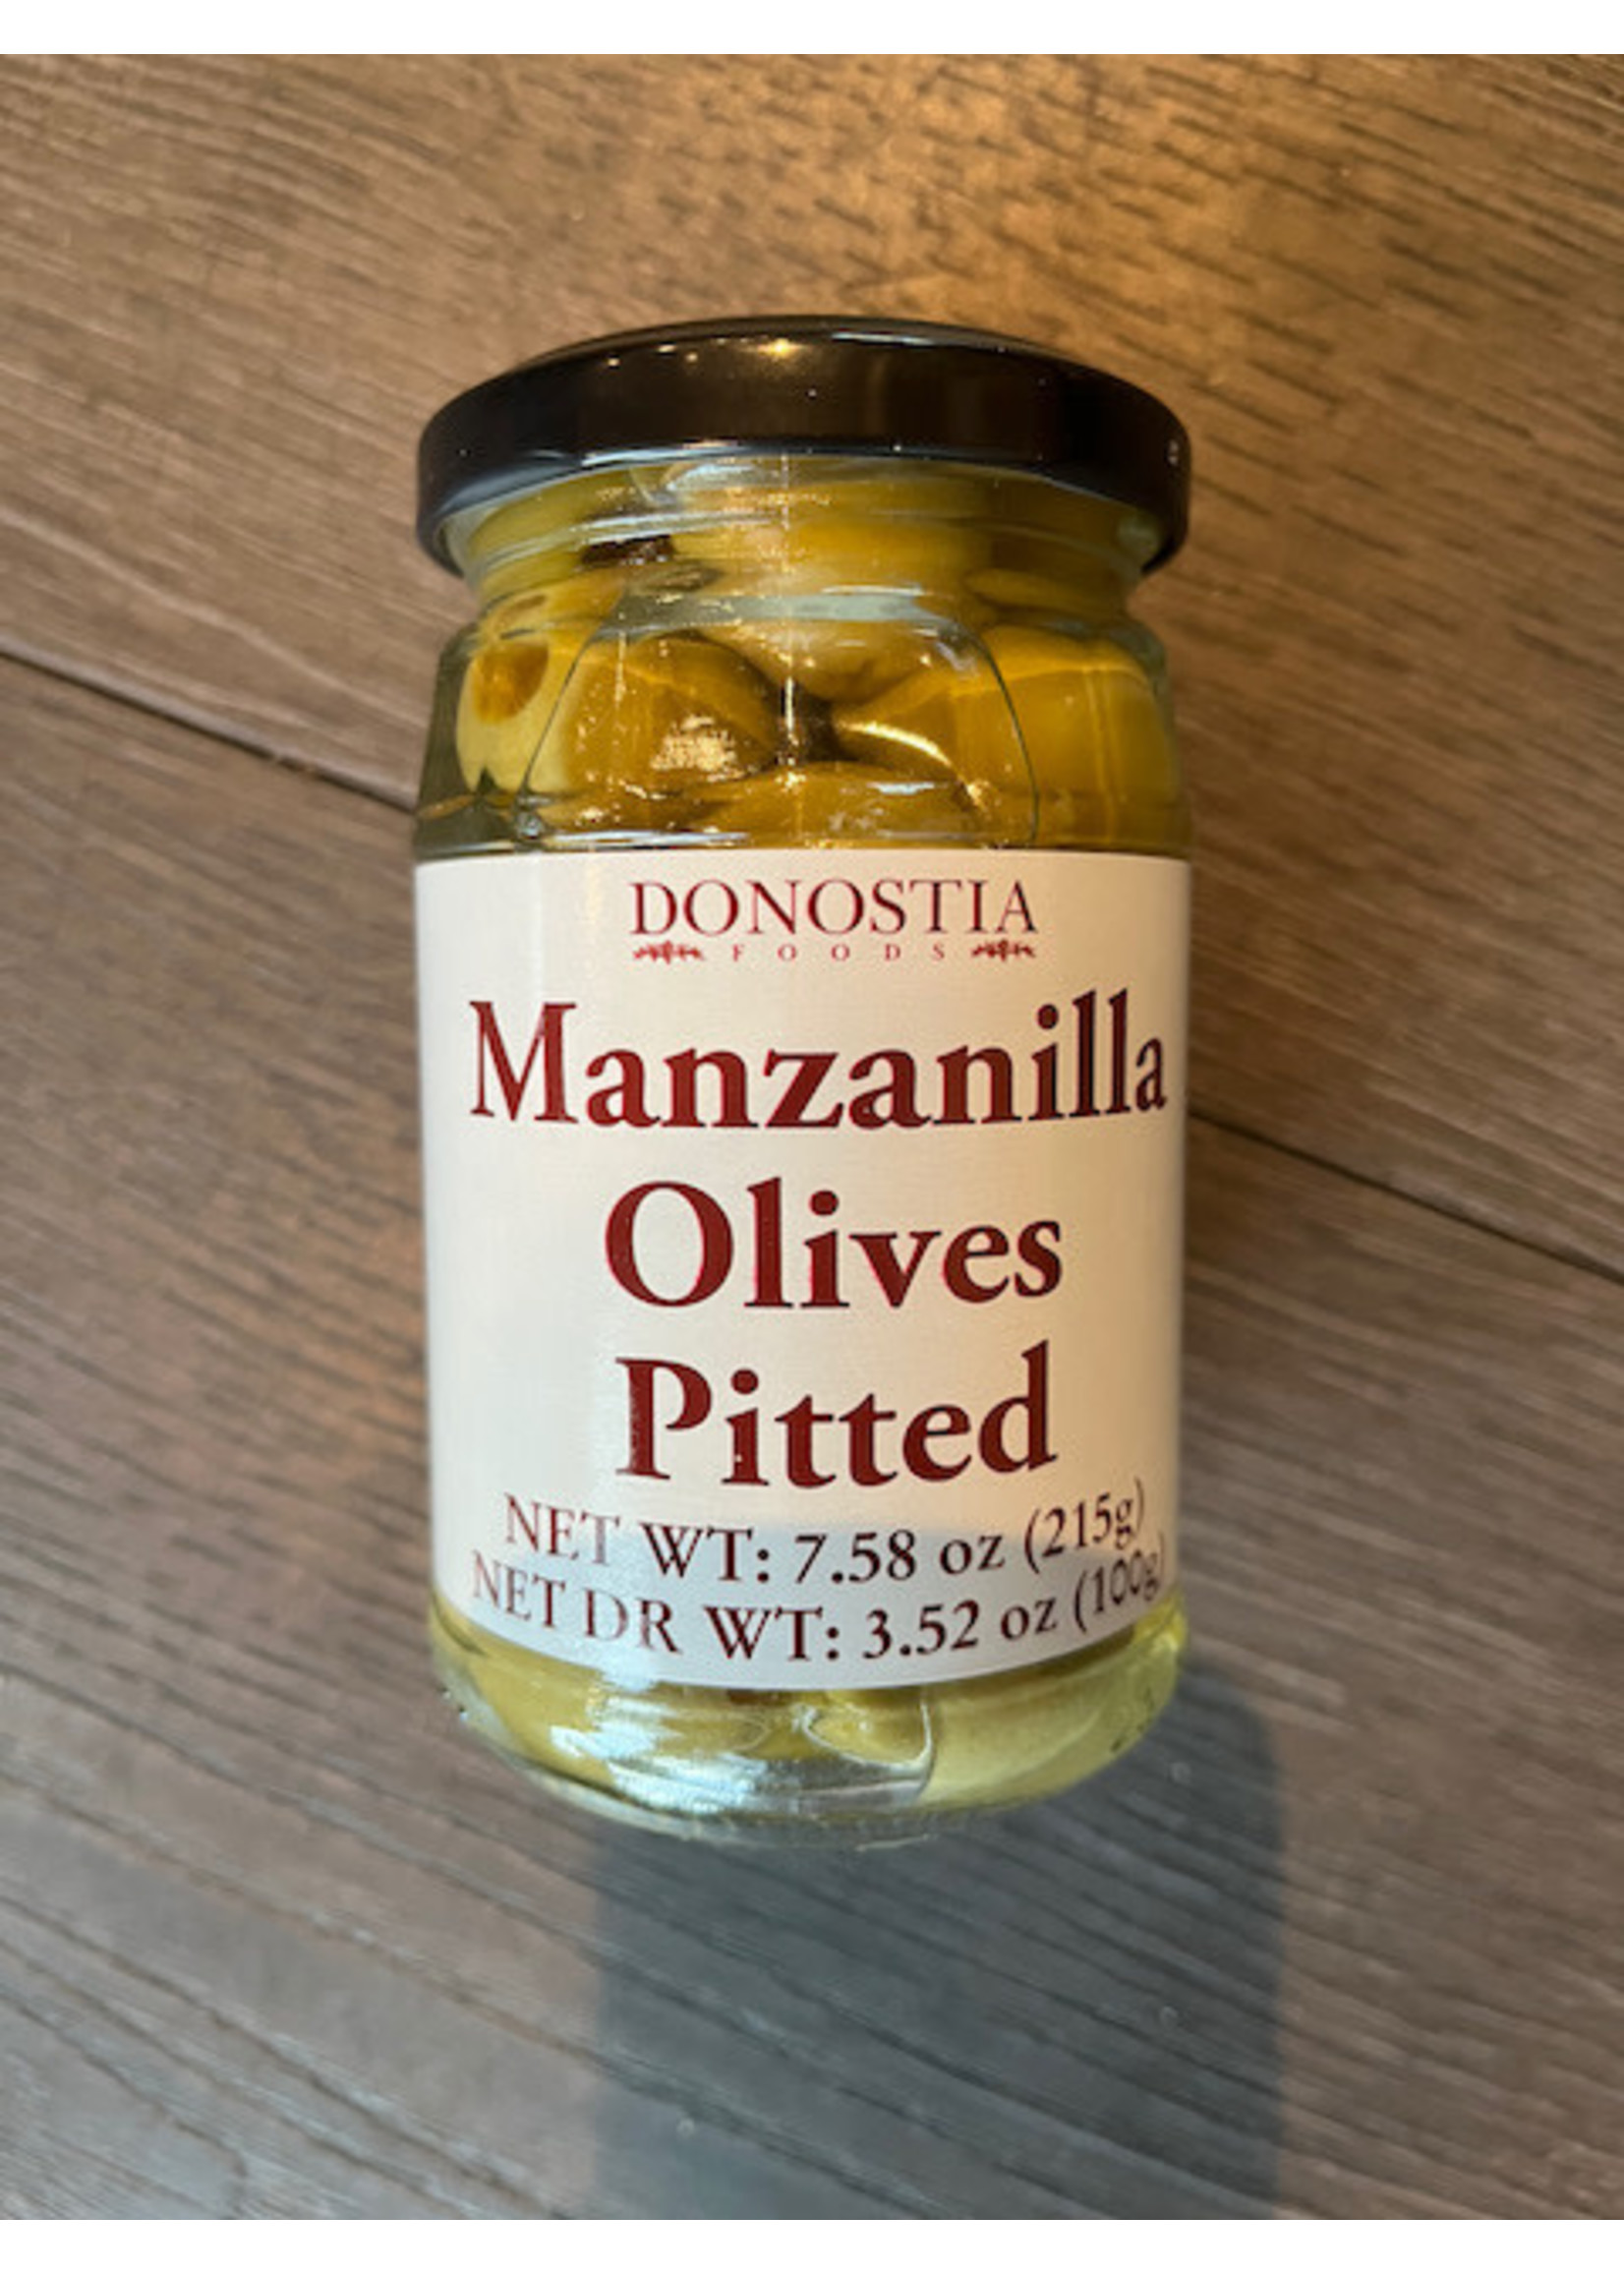 Food Donostia - Manzanilla Olives